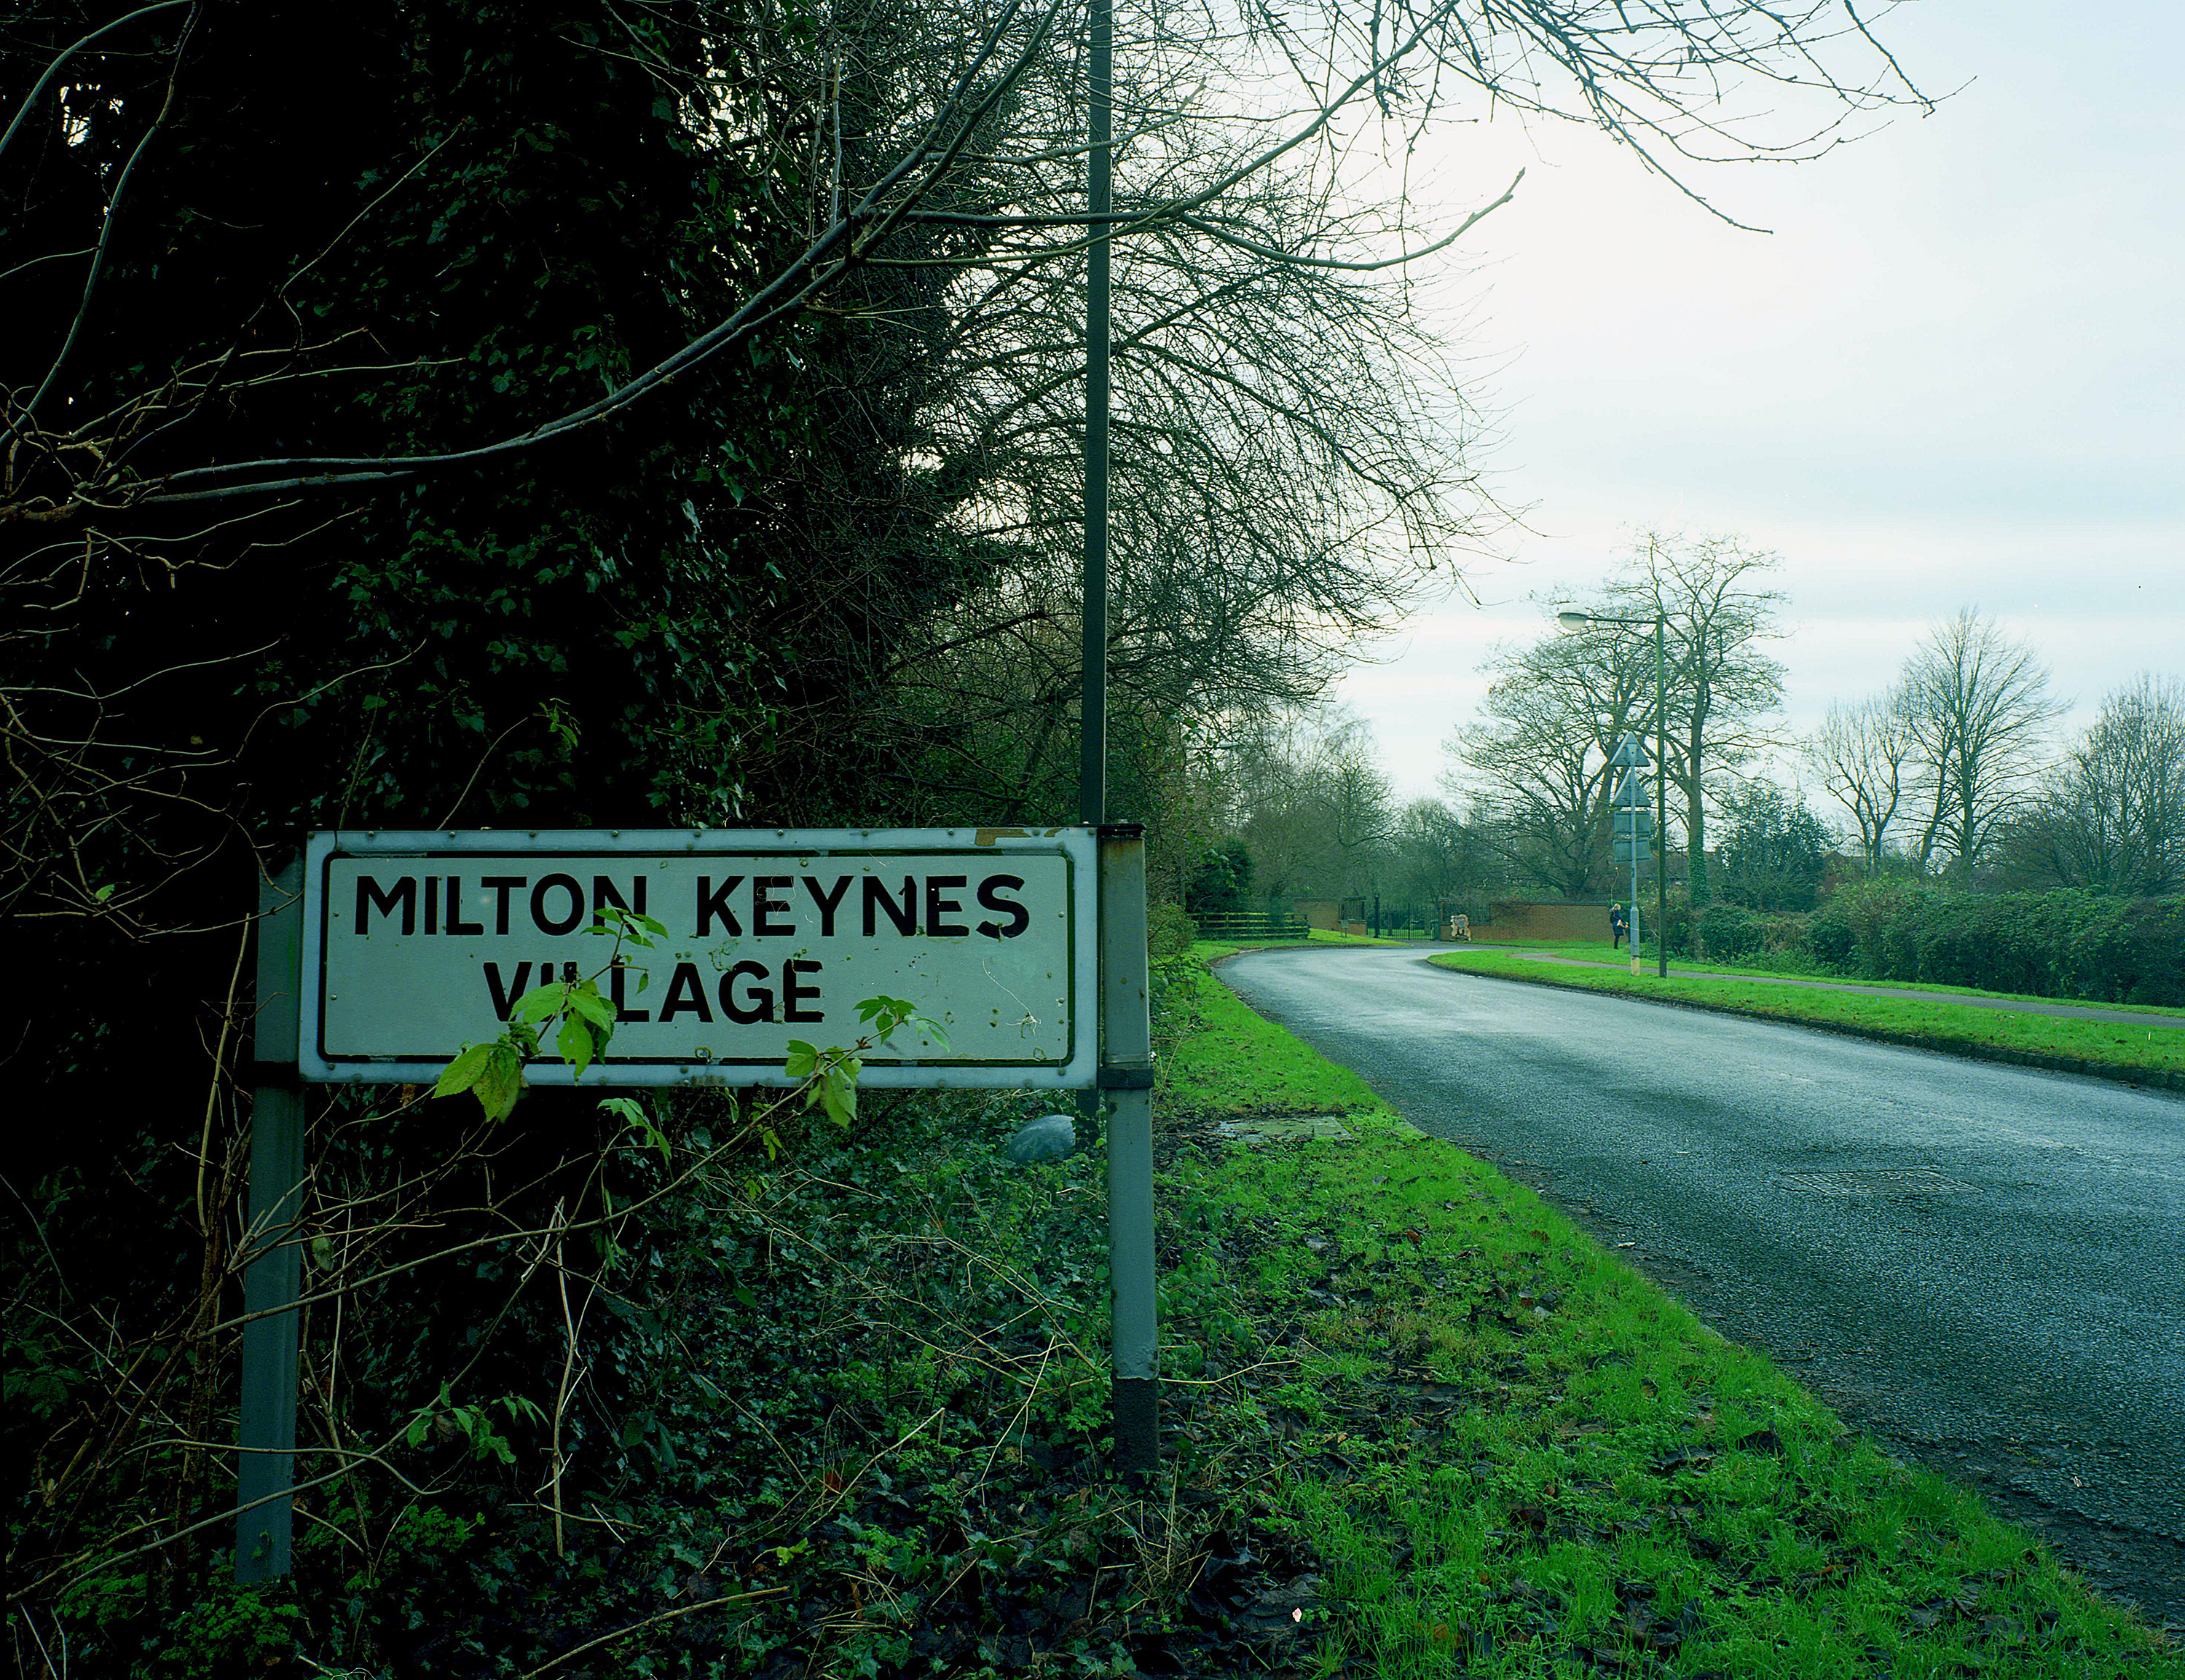 Milton Keynes Village